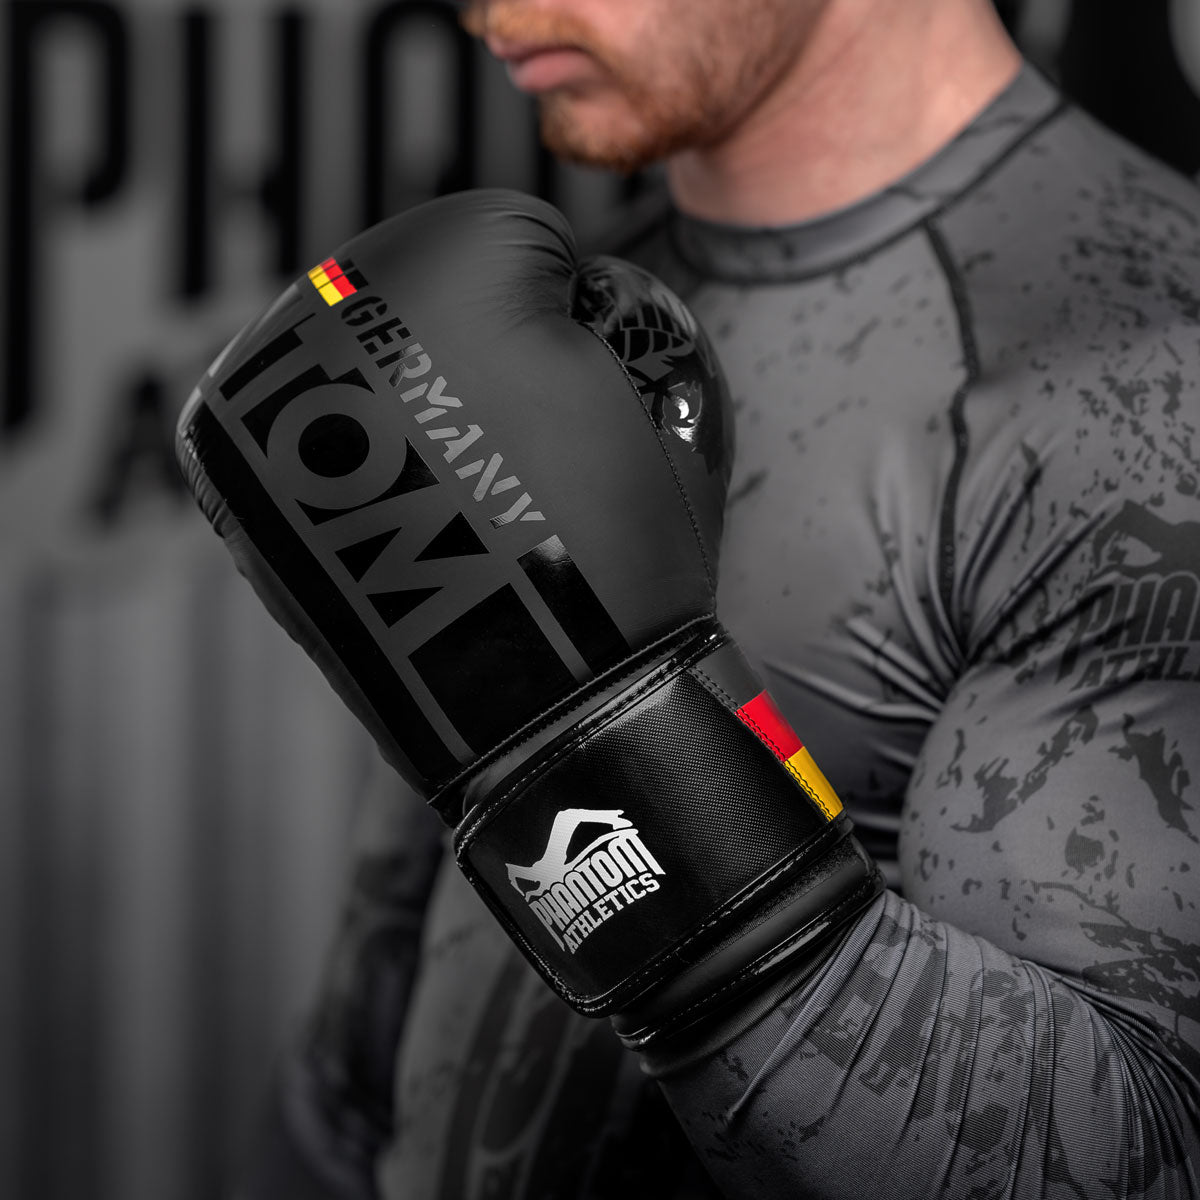 Boxing gloves, SPEED50 - ADISBG50-SMU, Adidas - DragonSports.eu